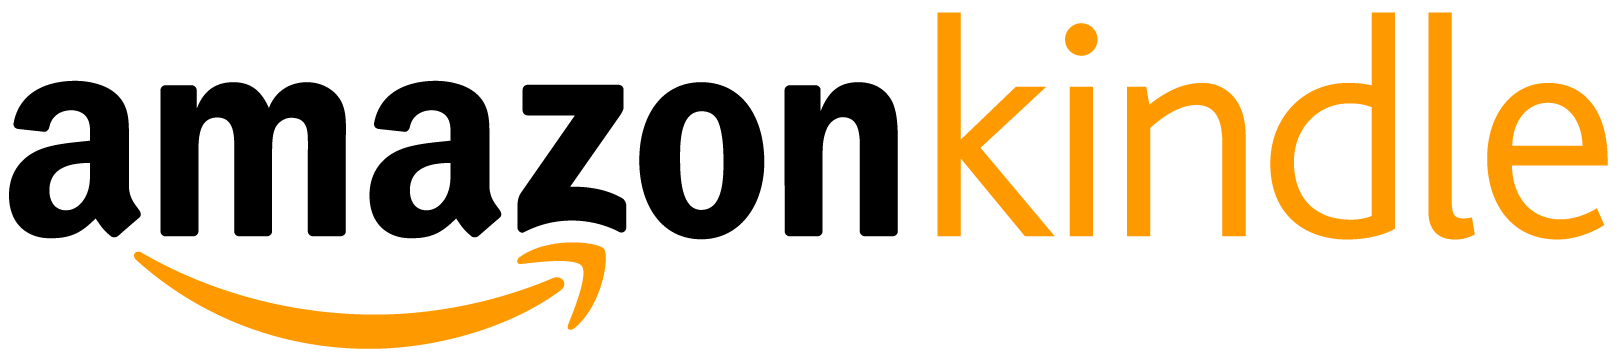 Amazon_Kindle_logo-01 (1).png